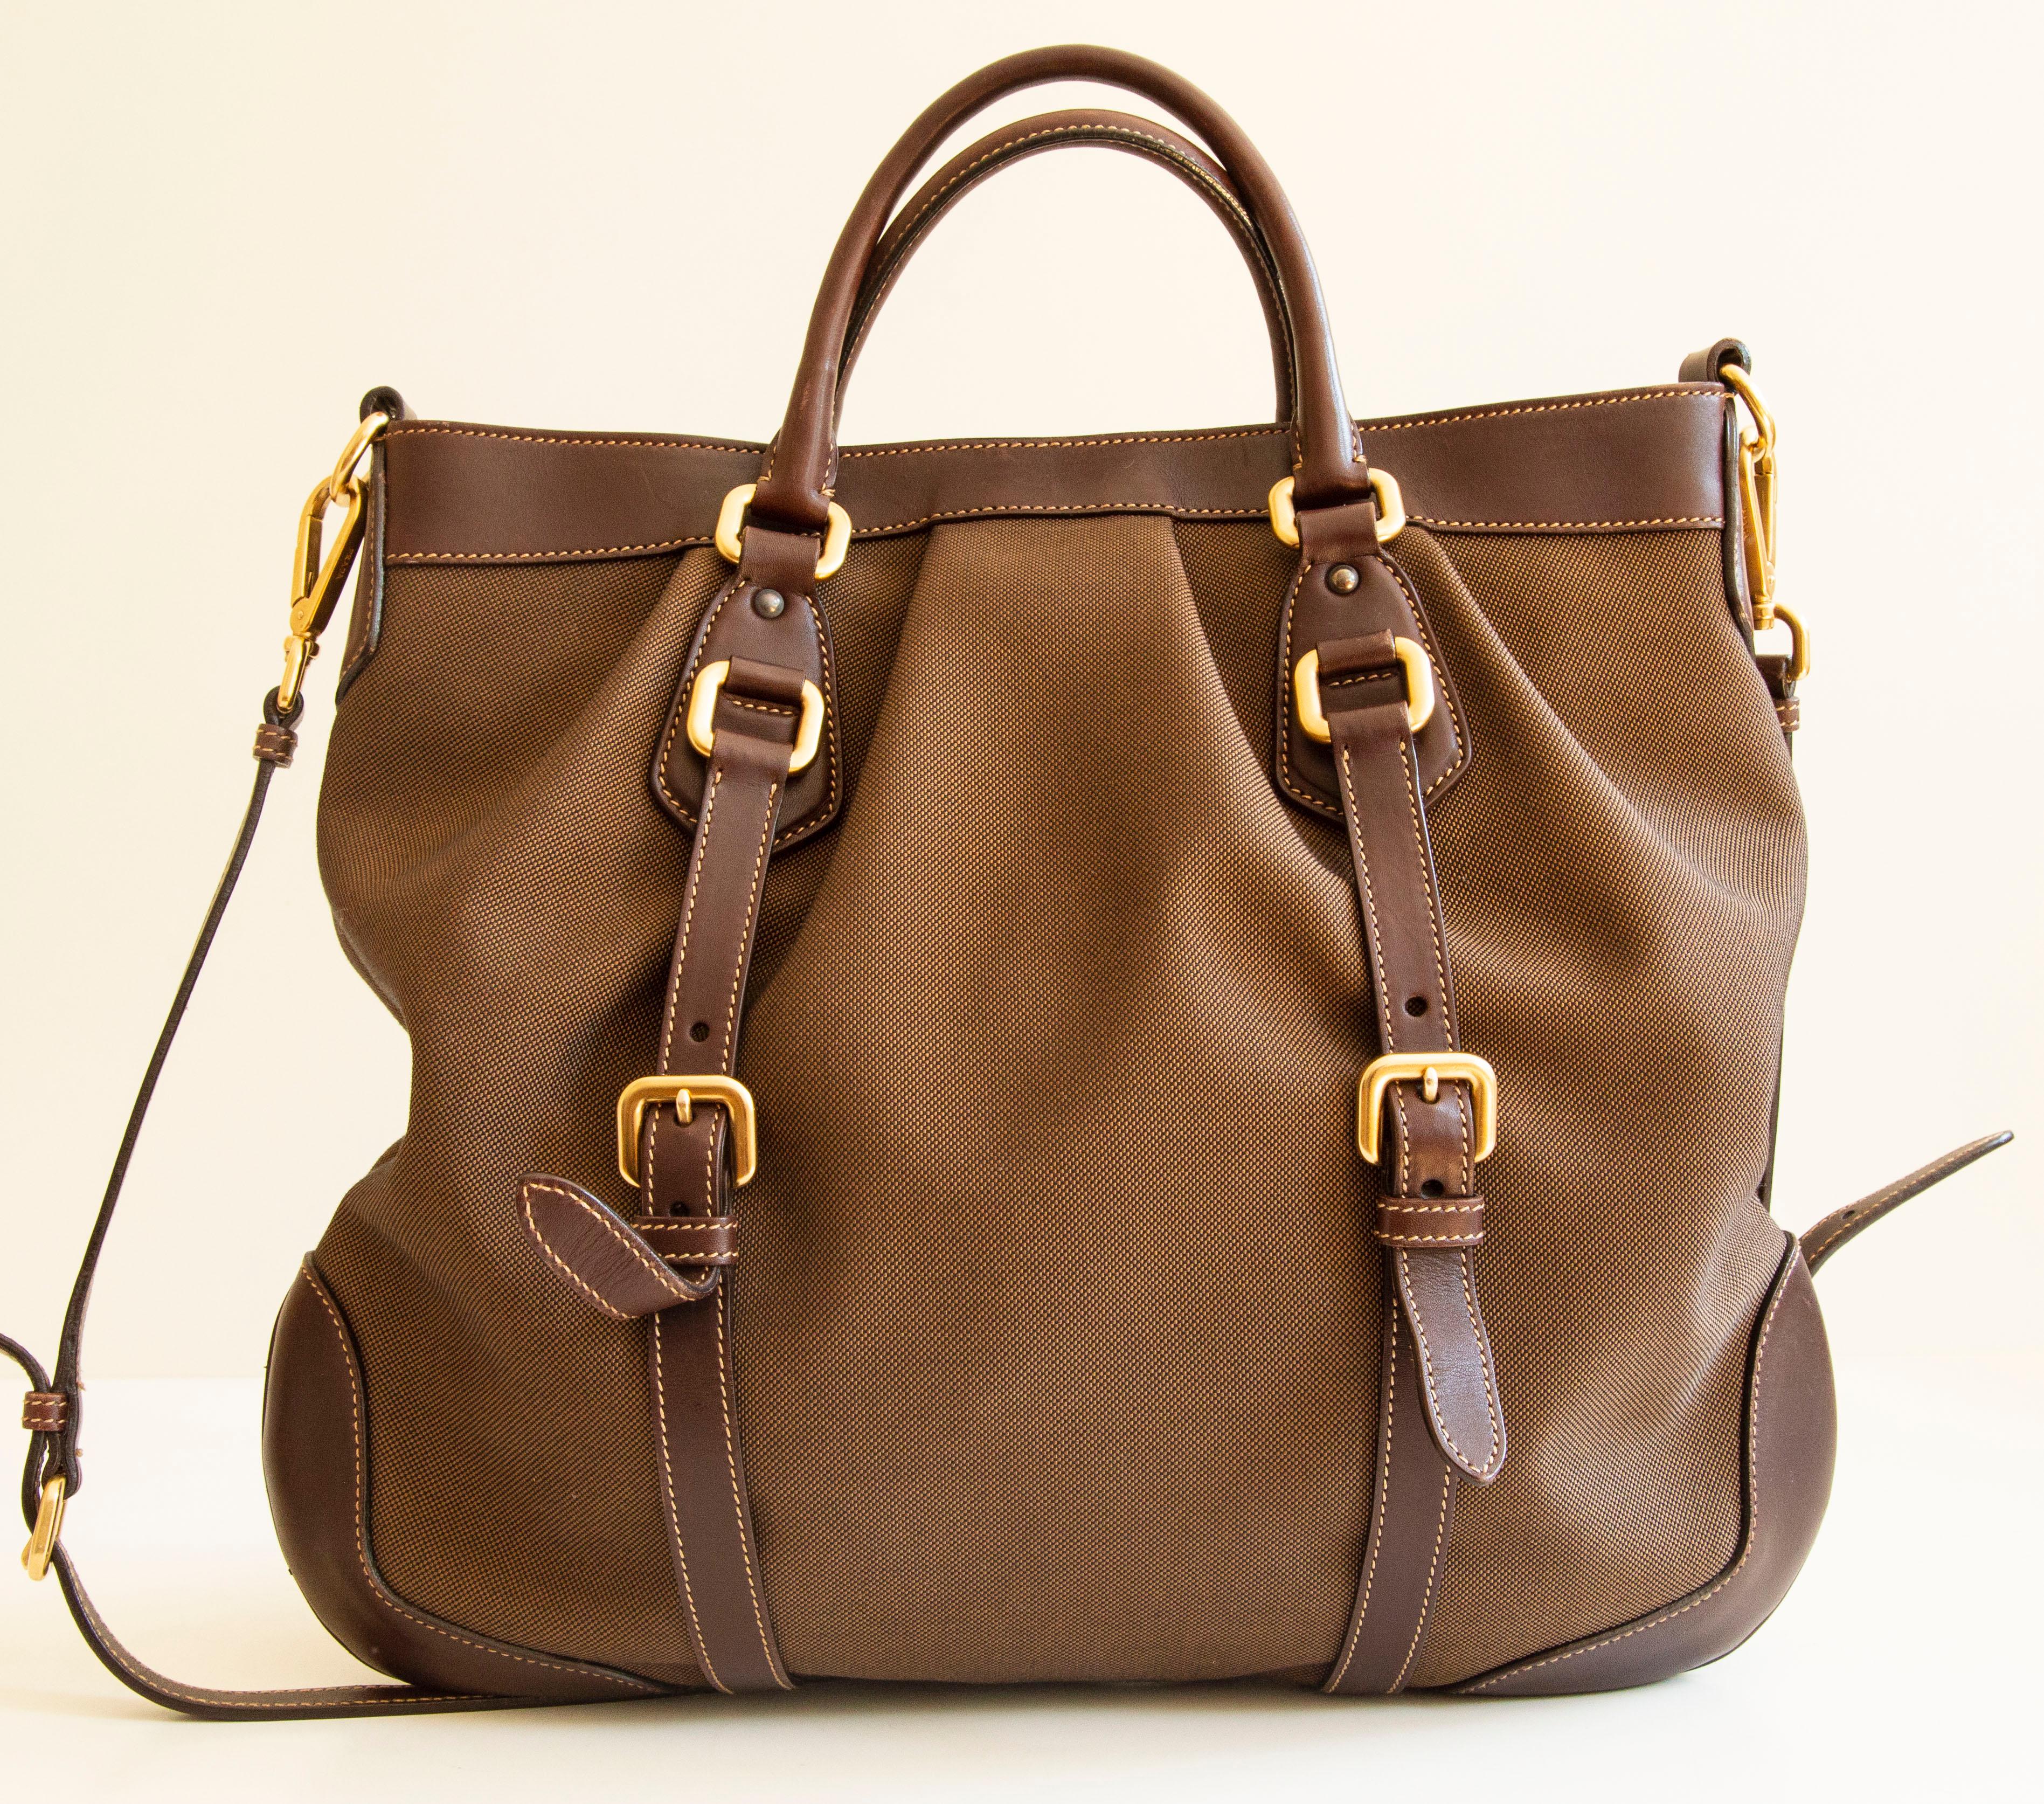 Un authentique sac en Jacquard à double sens de Prada. Le sac se compose d'une toile Jacquard marron, d'une garniture en cuir marron et d'une quincaillerie dorée. L'intérieur est doublé de tissu synthétique Prada et comporte une poche latérale